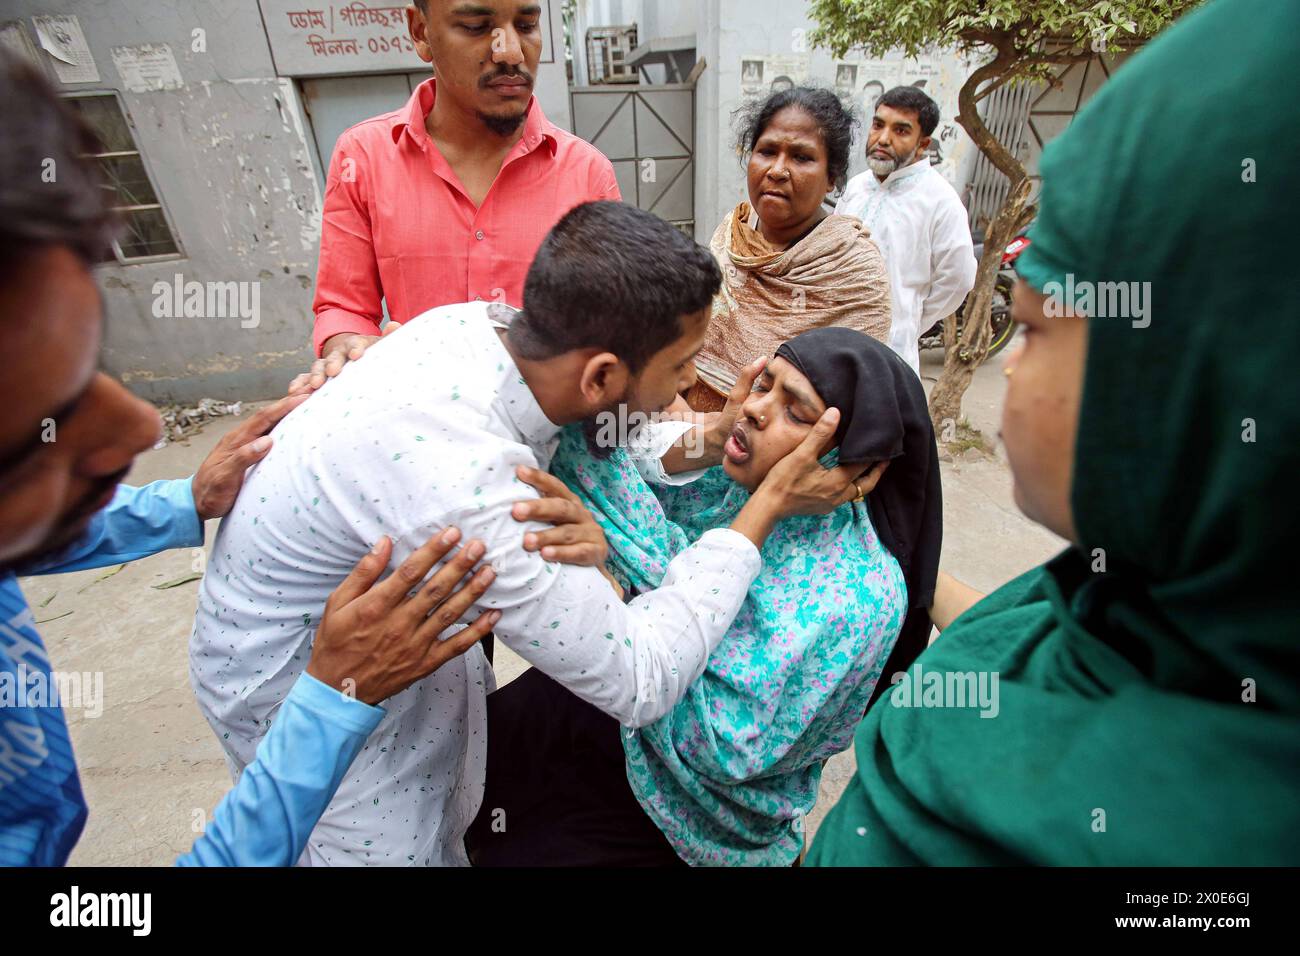 Mindestens 5 Tote bei einem Schiffsunglück in Sadarghat in Dhaka Ein Verwandter reagiert, nachdem er die Leiche eines geliebten Menschen in der Leichenhalle des Sir Salimullah Medical College Hospital gesehen hat. Bangladesch, 11. April 2024. Nach Angaben der Flusspolizei wurden mindestens fünf Menschen getötet, nachdem ein Schiffseil bei einem Parkversuch von einem anderen Schiff am Sadarghat Schiffsterminal in Dhaka abgerissen wurde. Dhaka Dhaka Bezirk Bangladesch Copyright: XHabiburxRahmanx Stockfoto